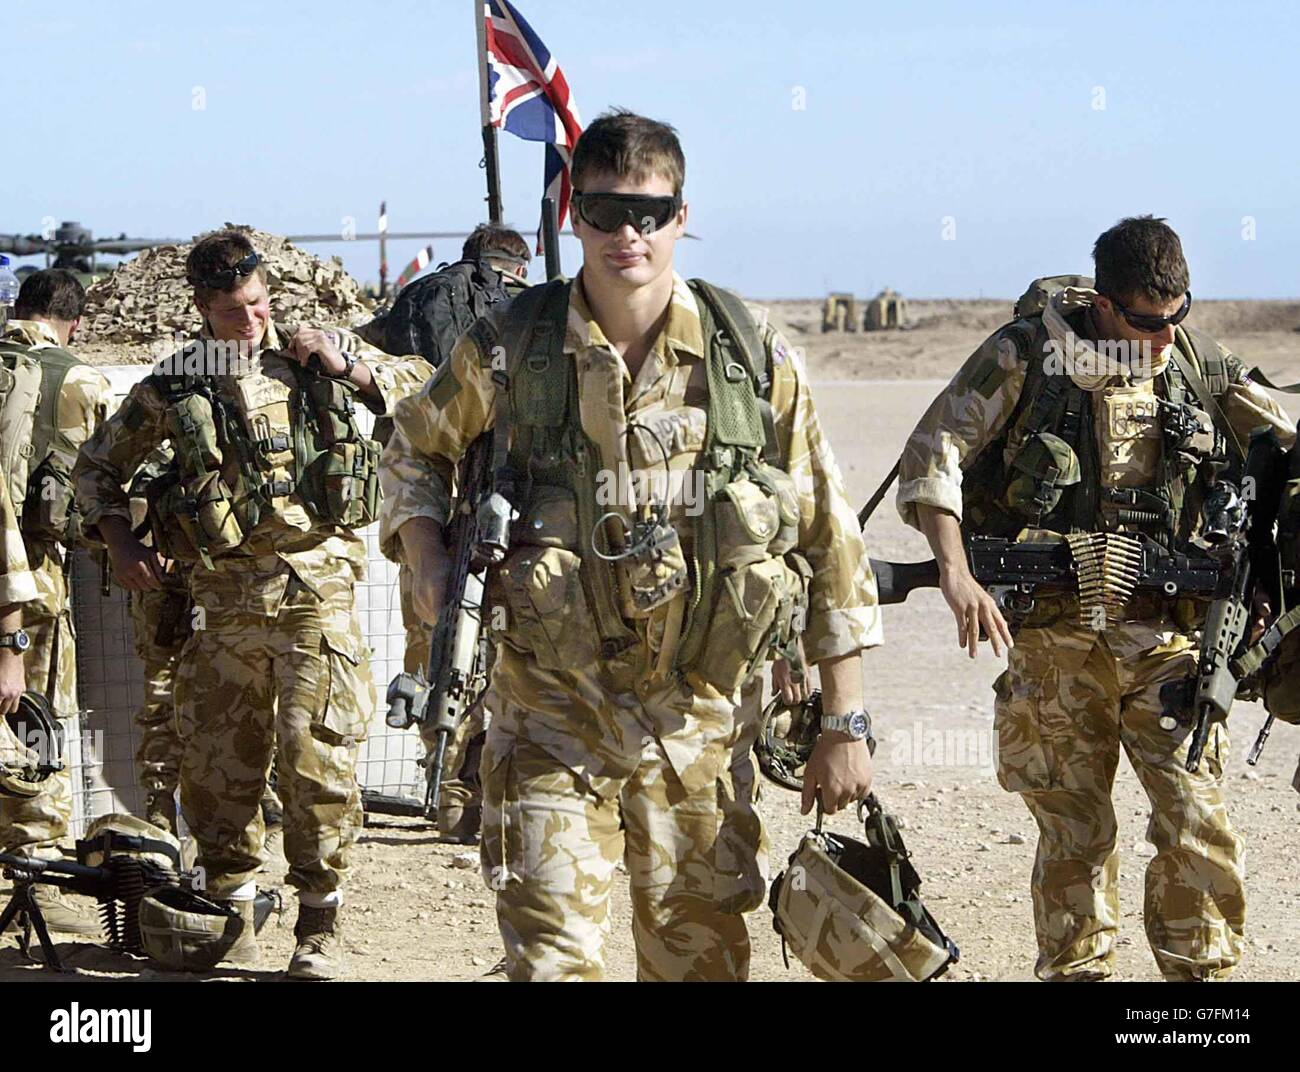 Les commandants britanniques de la Royal Marines attachés au régiment Black Watch marchent avec leur équipement de combat avant une mission au camp Dogwood à 25 miles au sud de Bagdad, en Irak. Banque D'Images